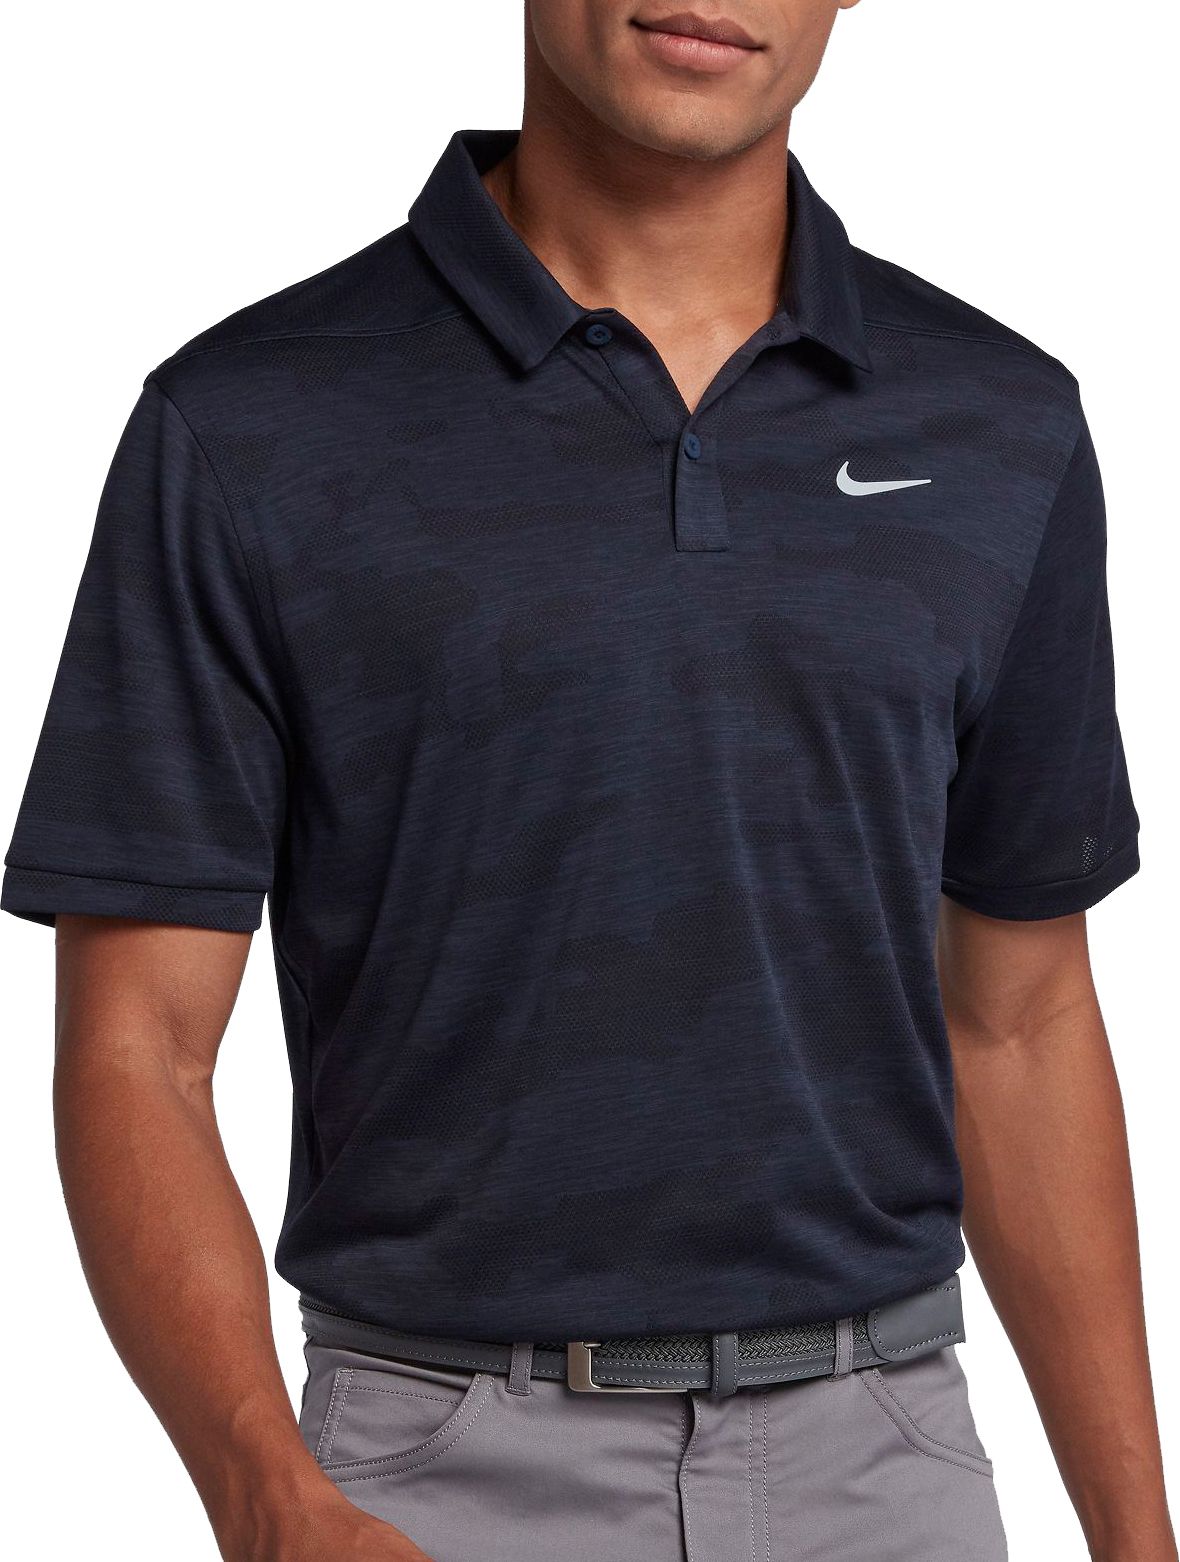 Nike Men's Zonal Cooling Camo Golf Polo - .97